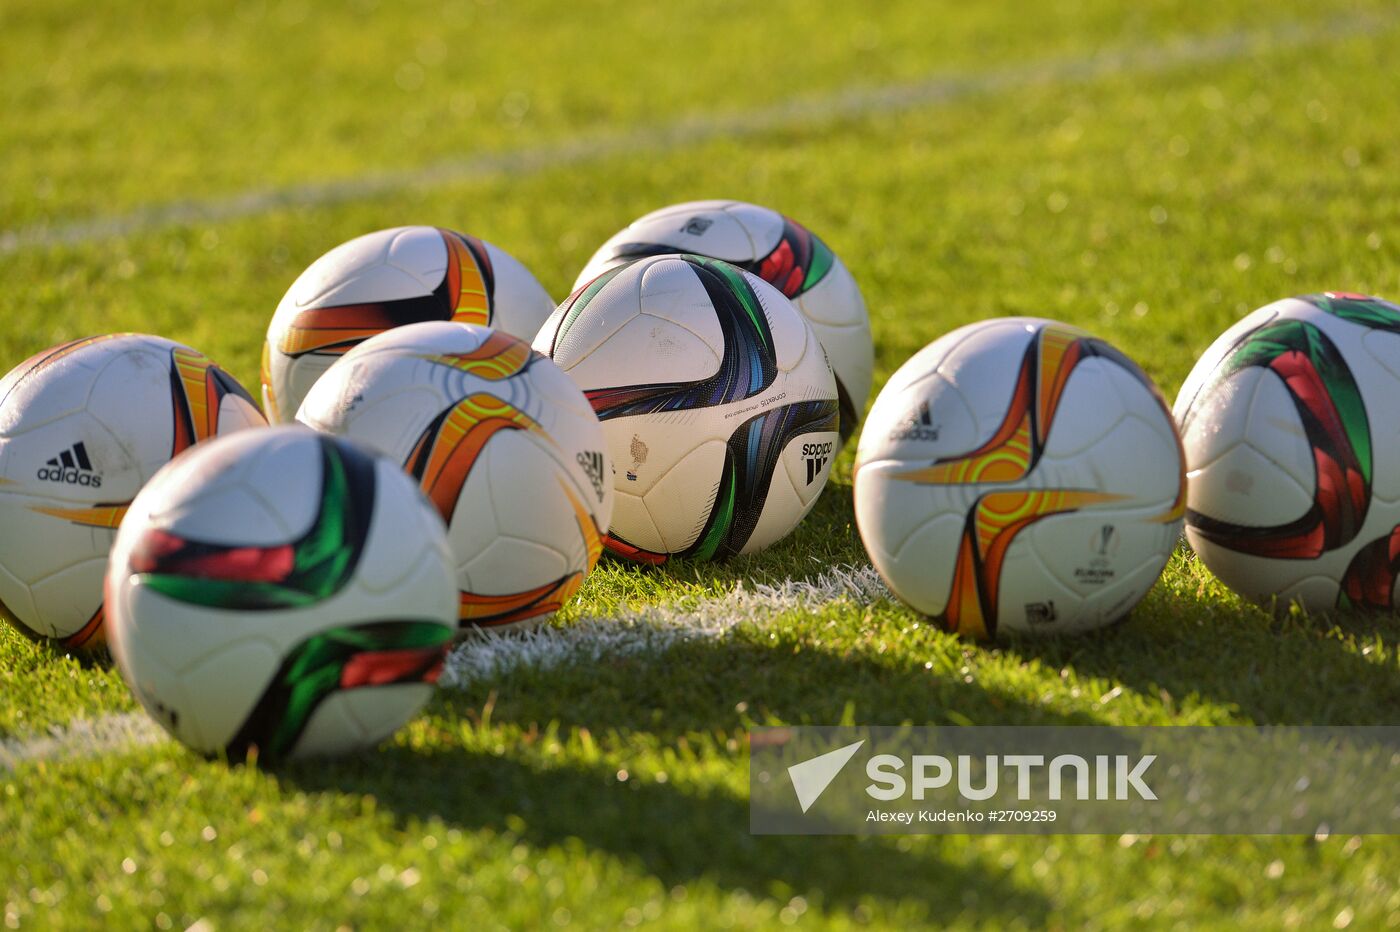 UEFA Europa League. FC Lokomotiv holds training session